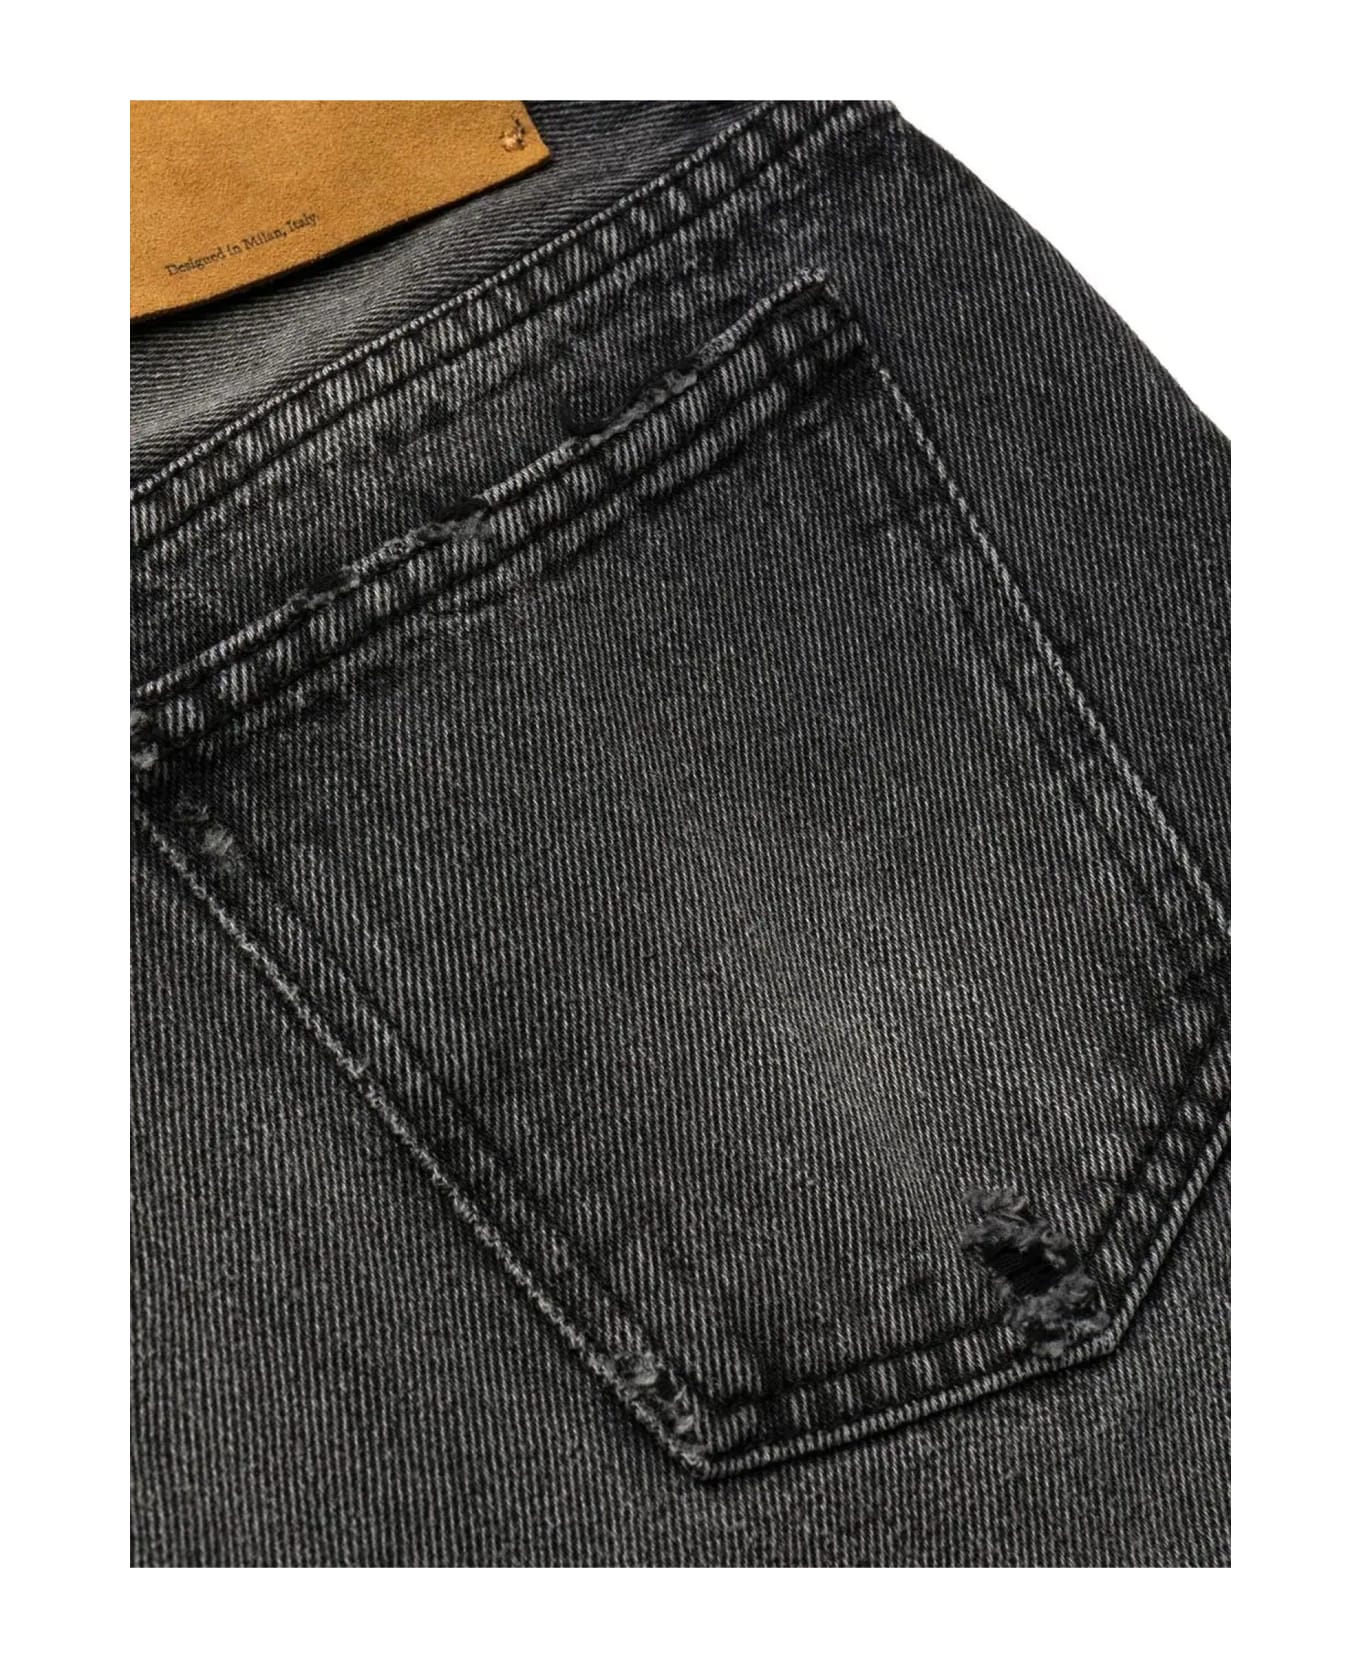 Off-White Black Cotton Jeans - Nero